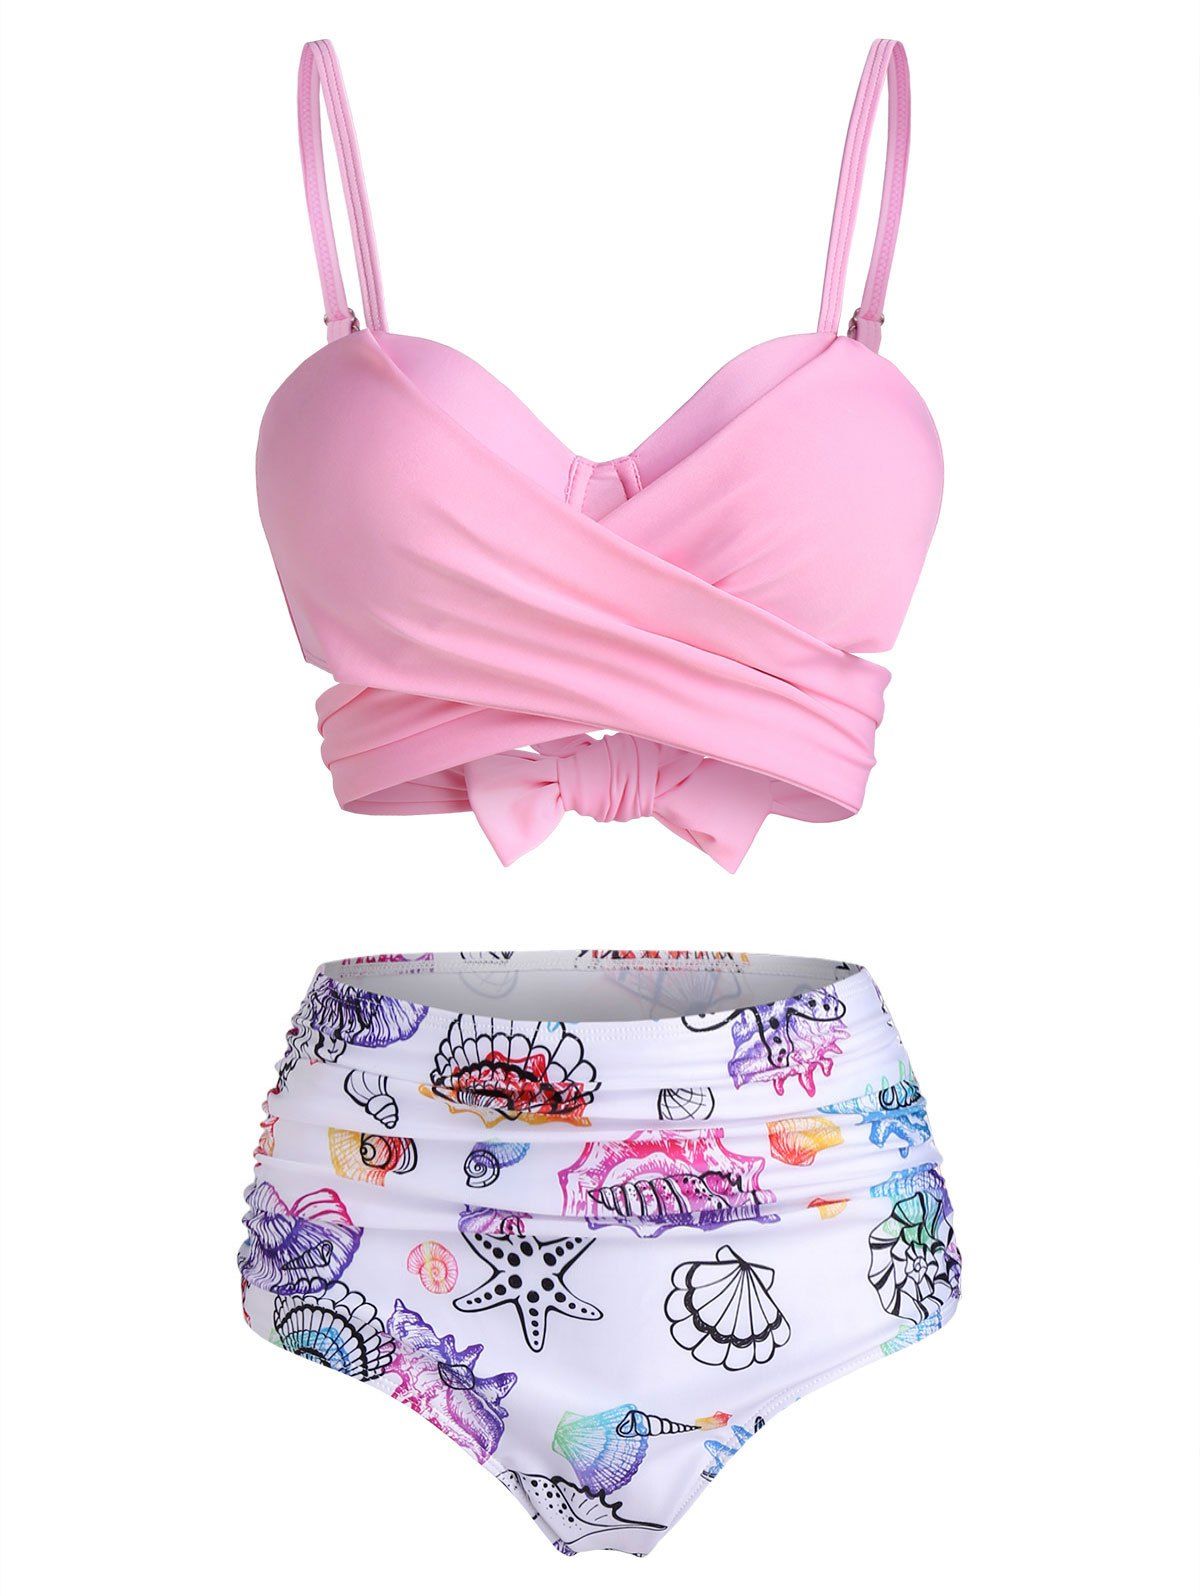 Shell Starfish Print Padded Wrap Bikini Set - LIGHT PINK M